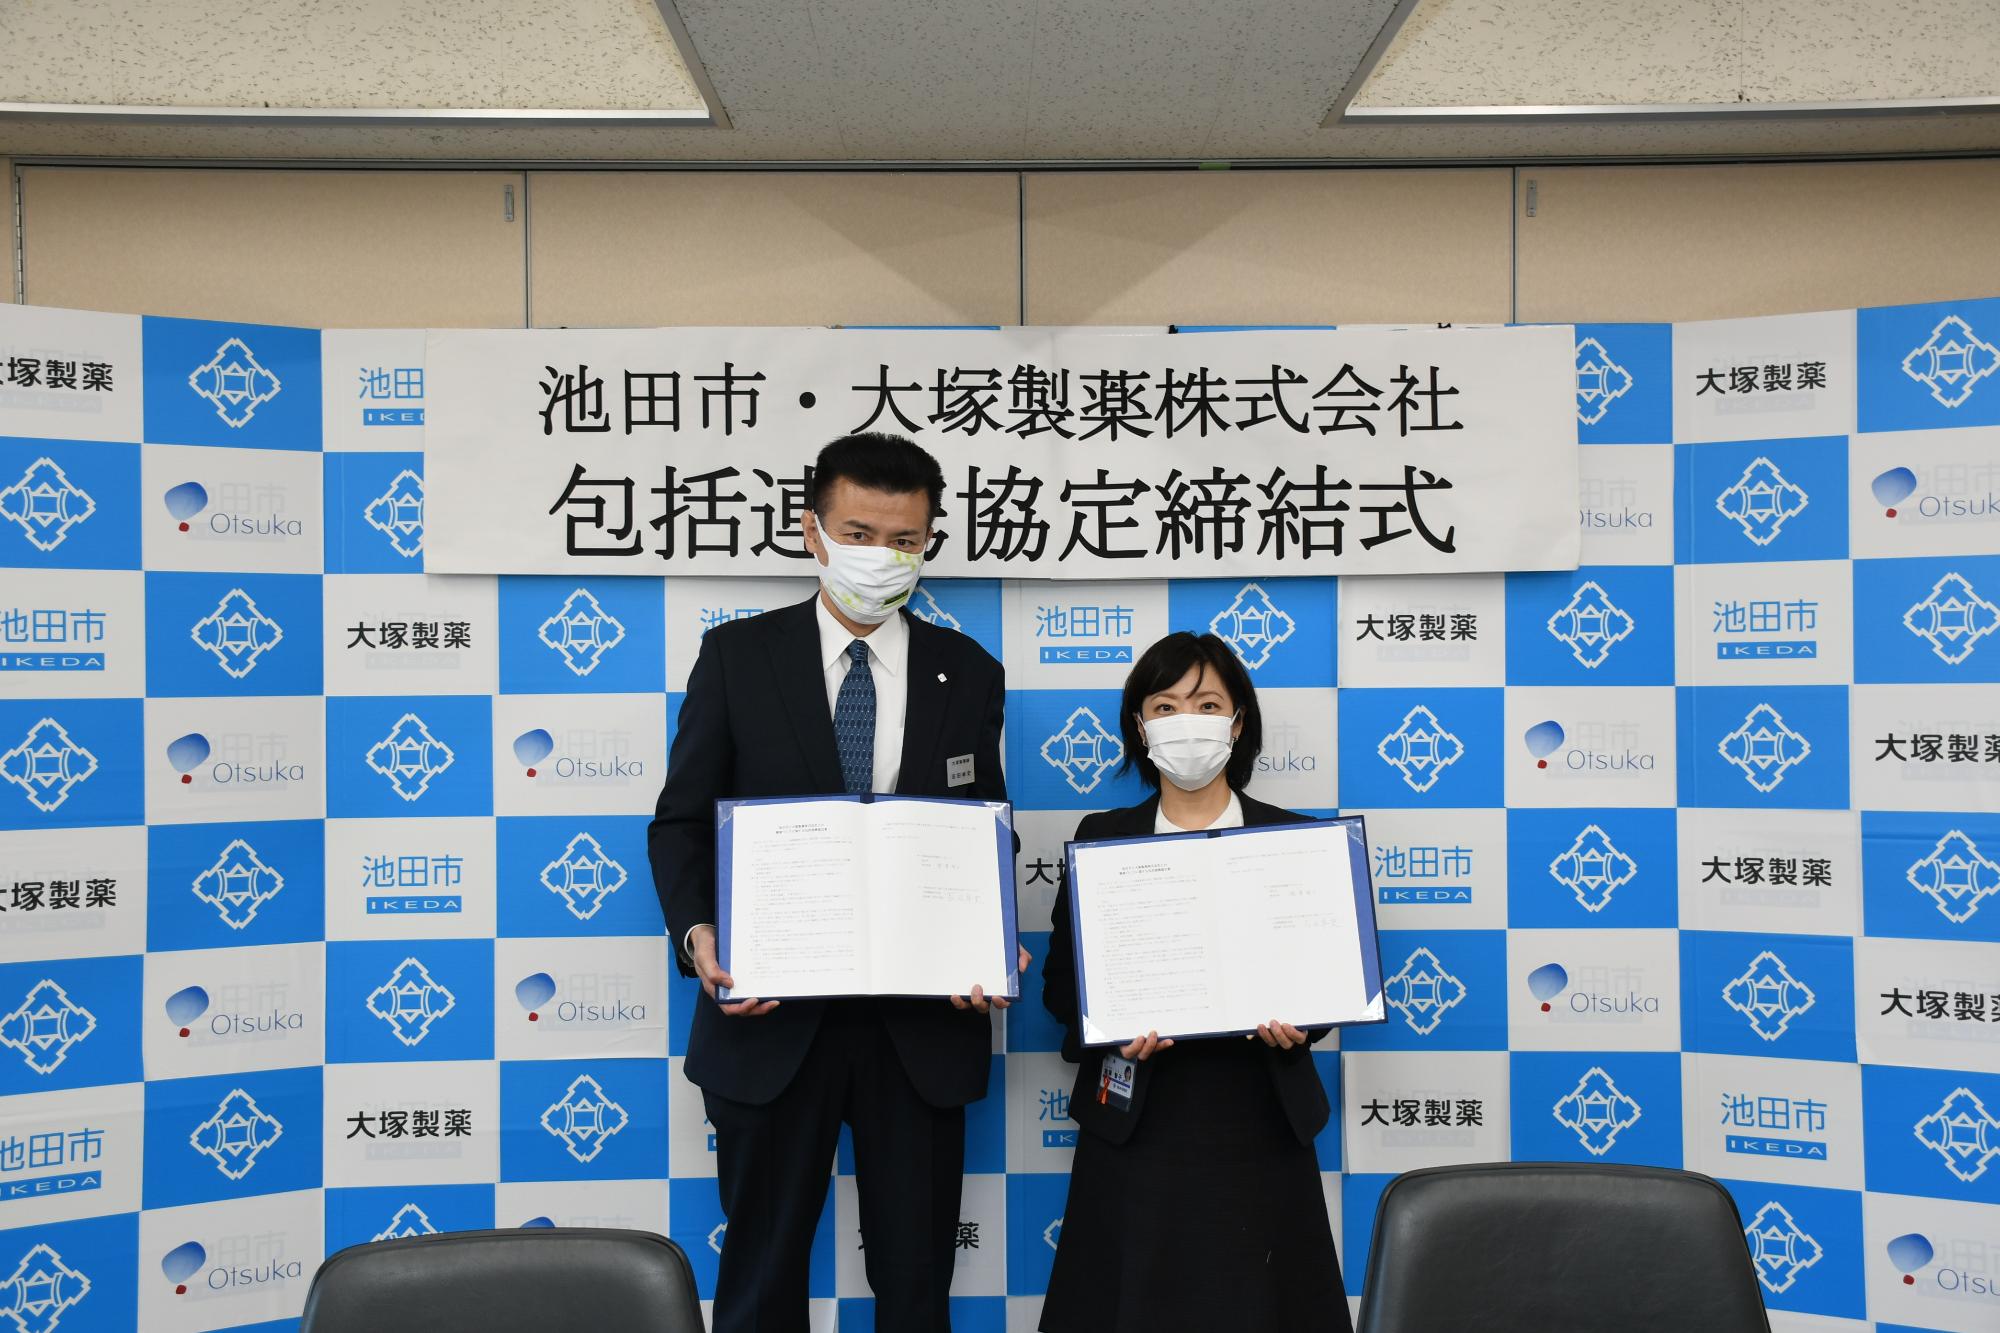 11月29日 大塚製薬株式会社と包括連携協定を締結のイメージ